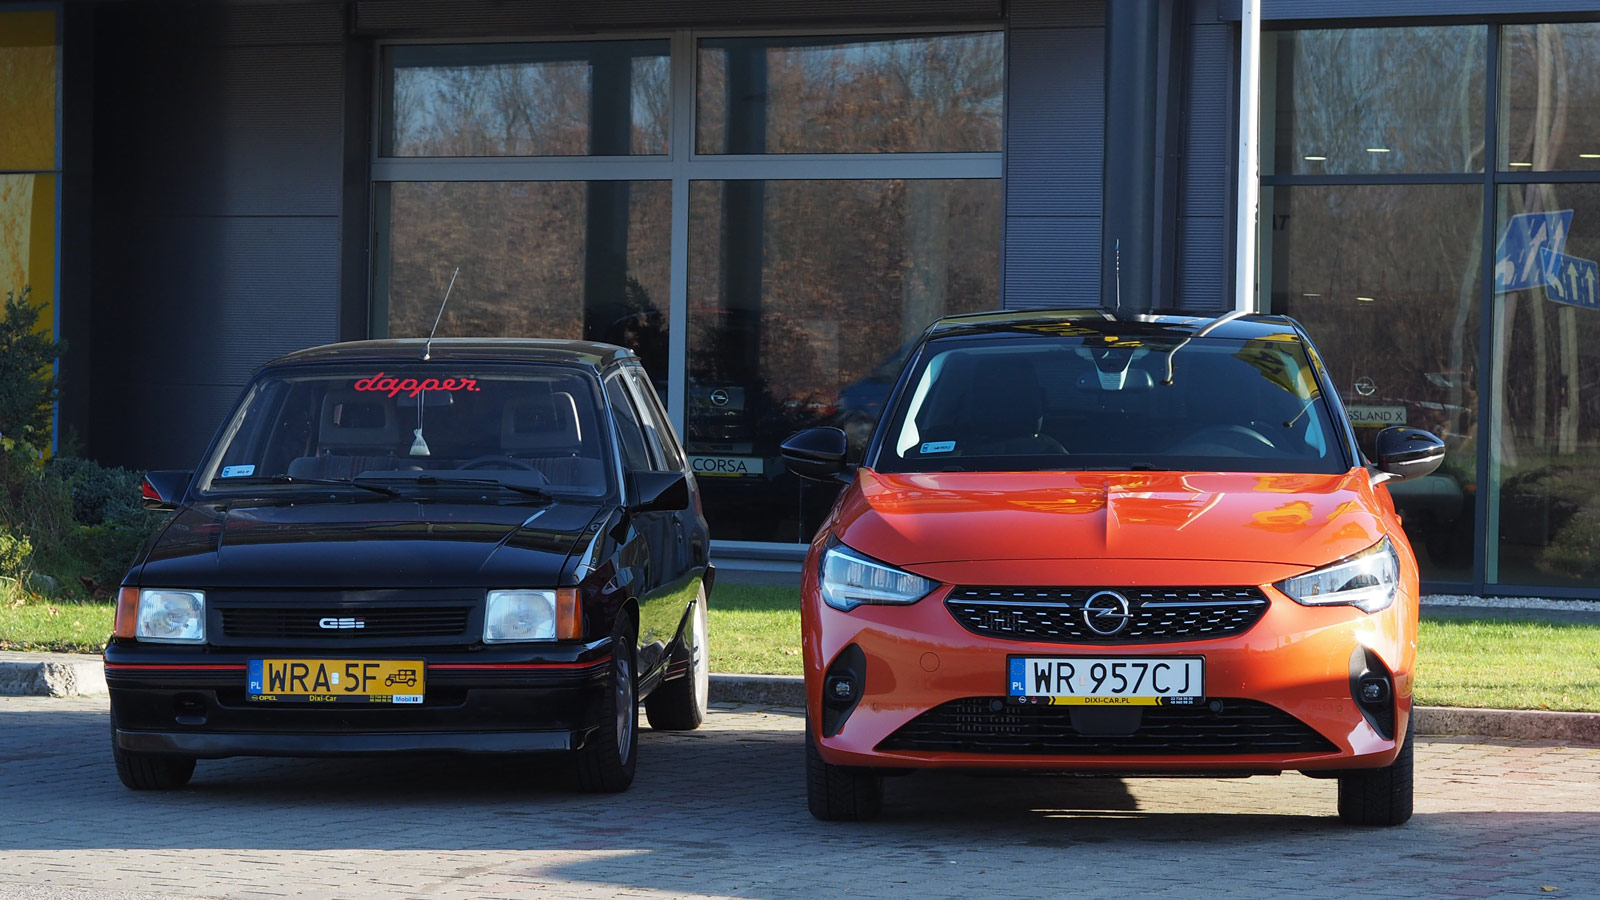 Pomarańczowa nowa Corsa F przed salonem Opel